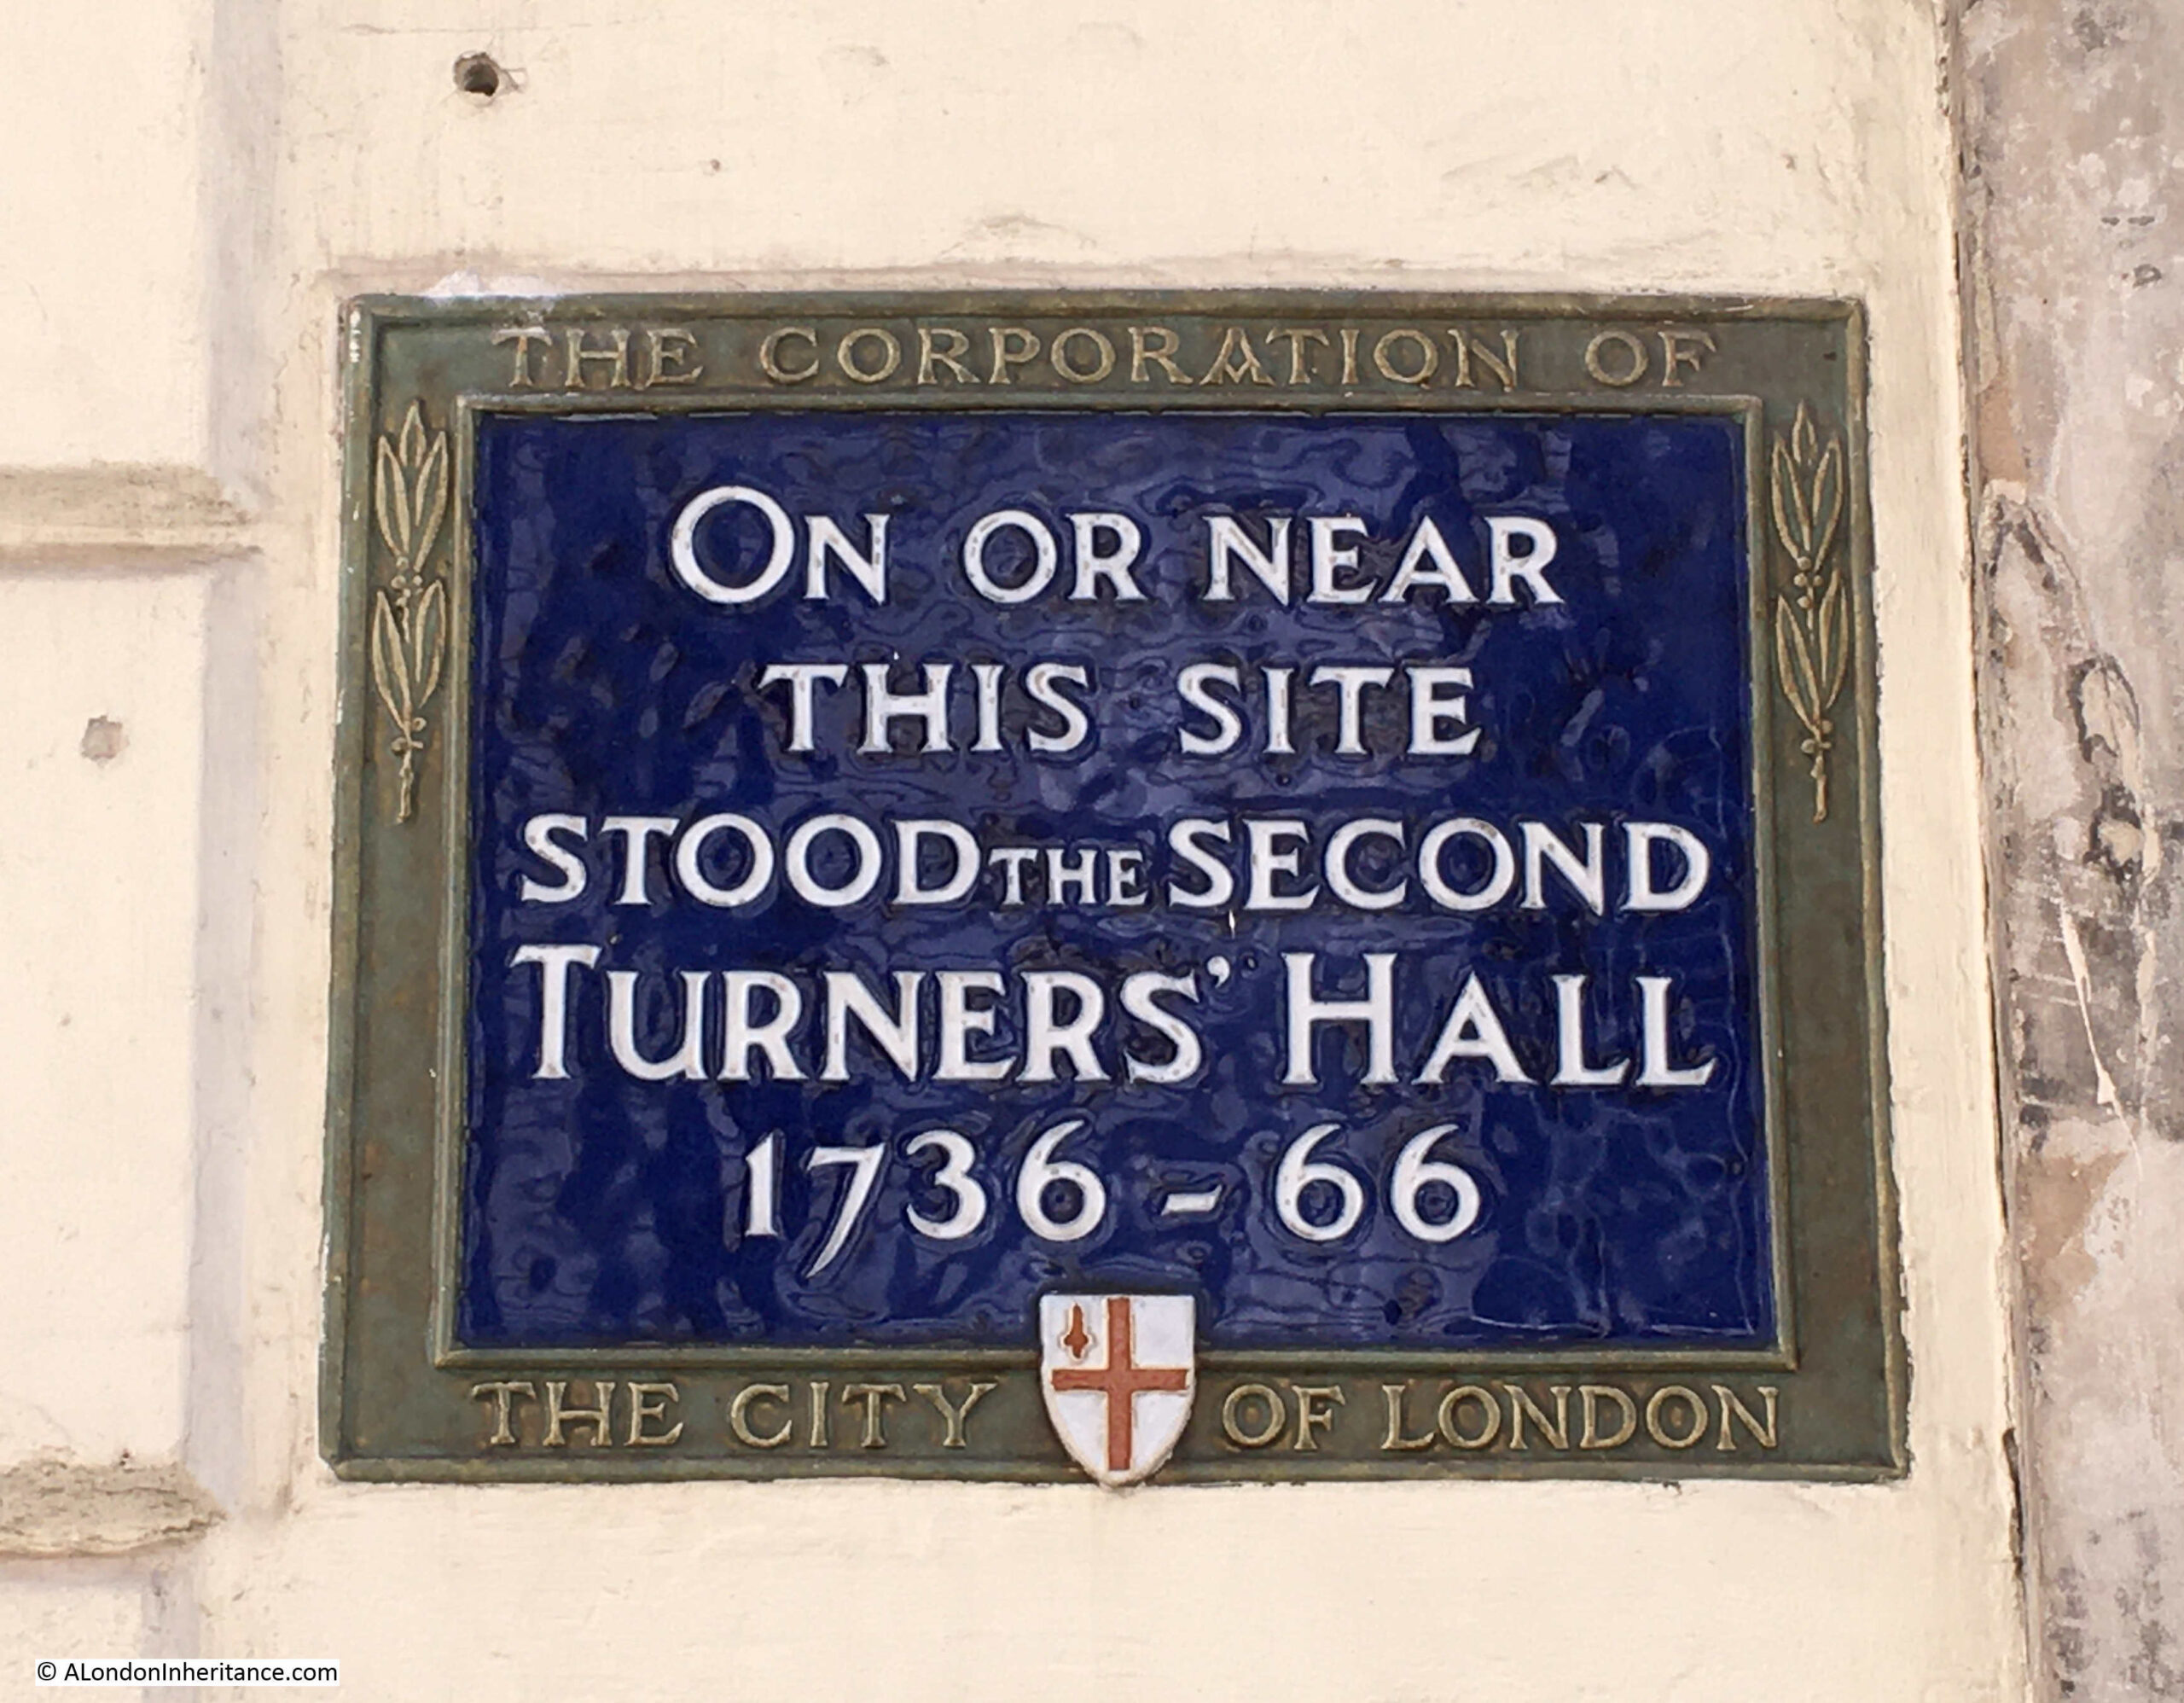 Turners Hall